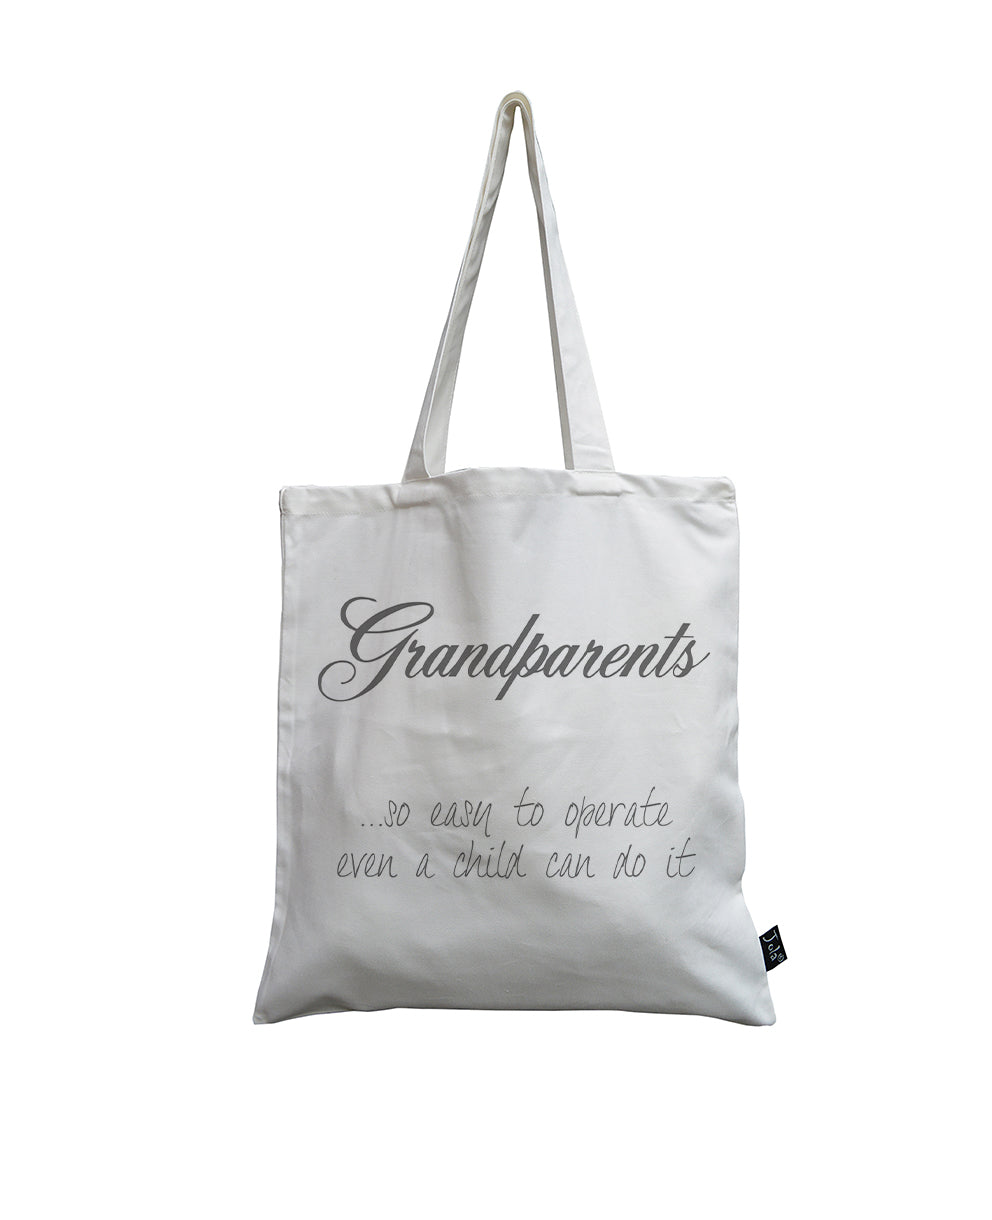 Grandparents White canvas bag